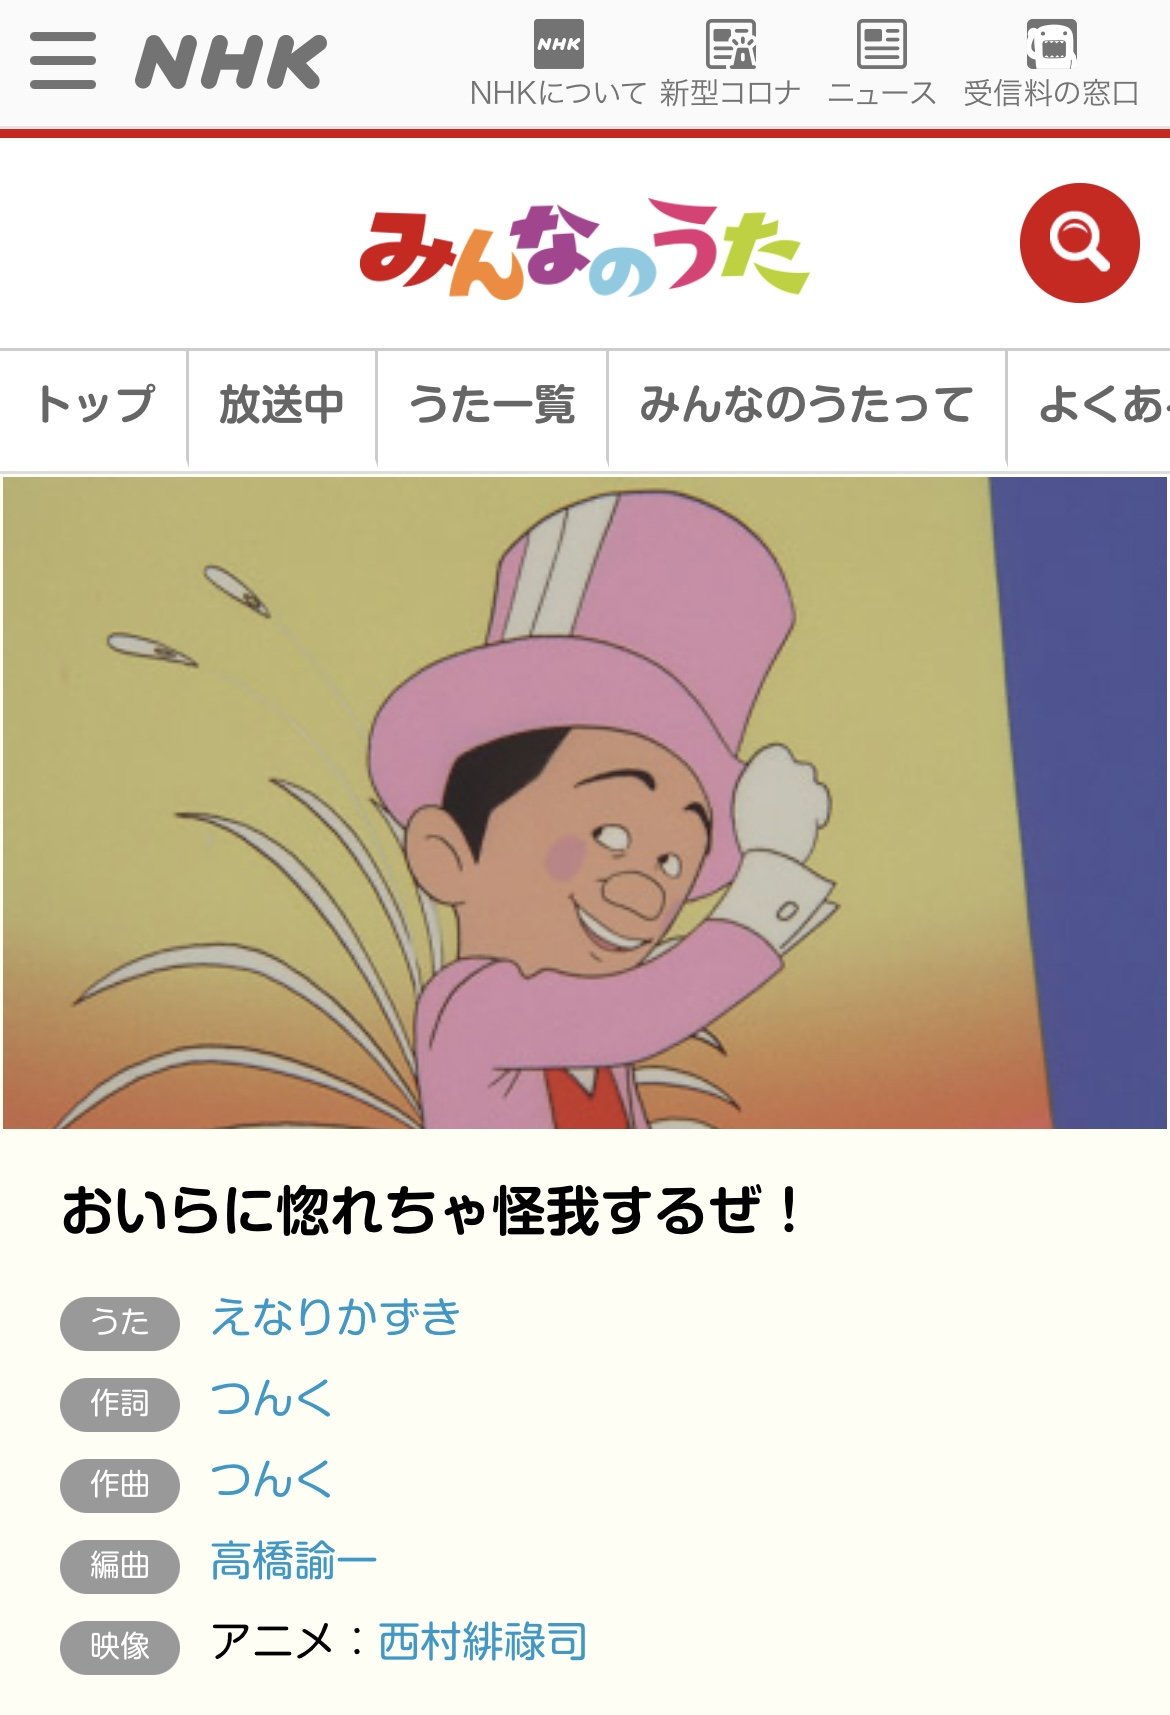 タモリやえなりかずき、郷ひろみも…NHK『みんなのうた』で驚きの歌唱を披露していた“意外な男性芸能人”の画像002